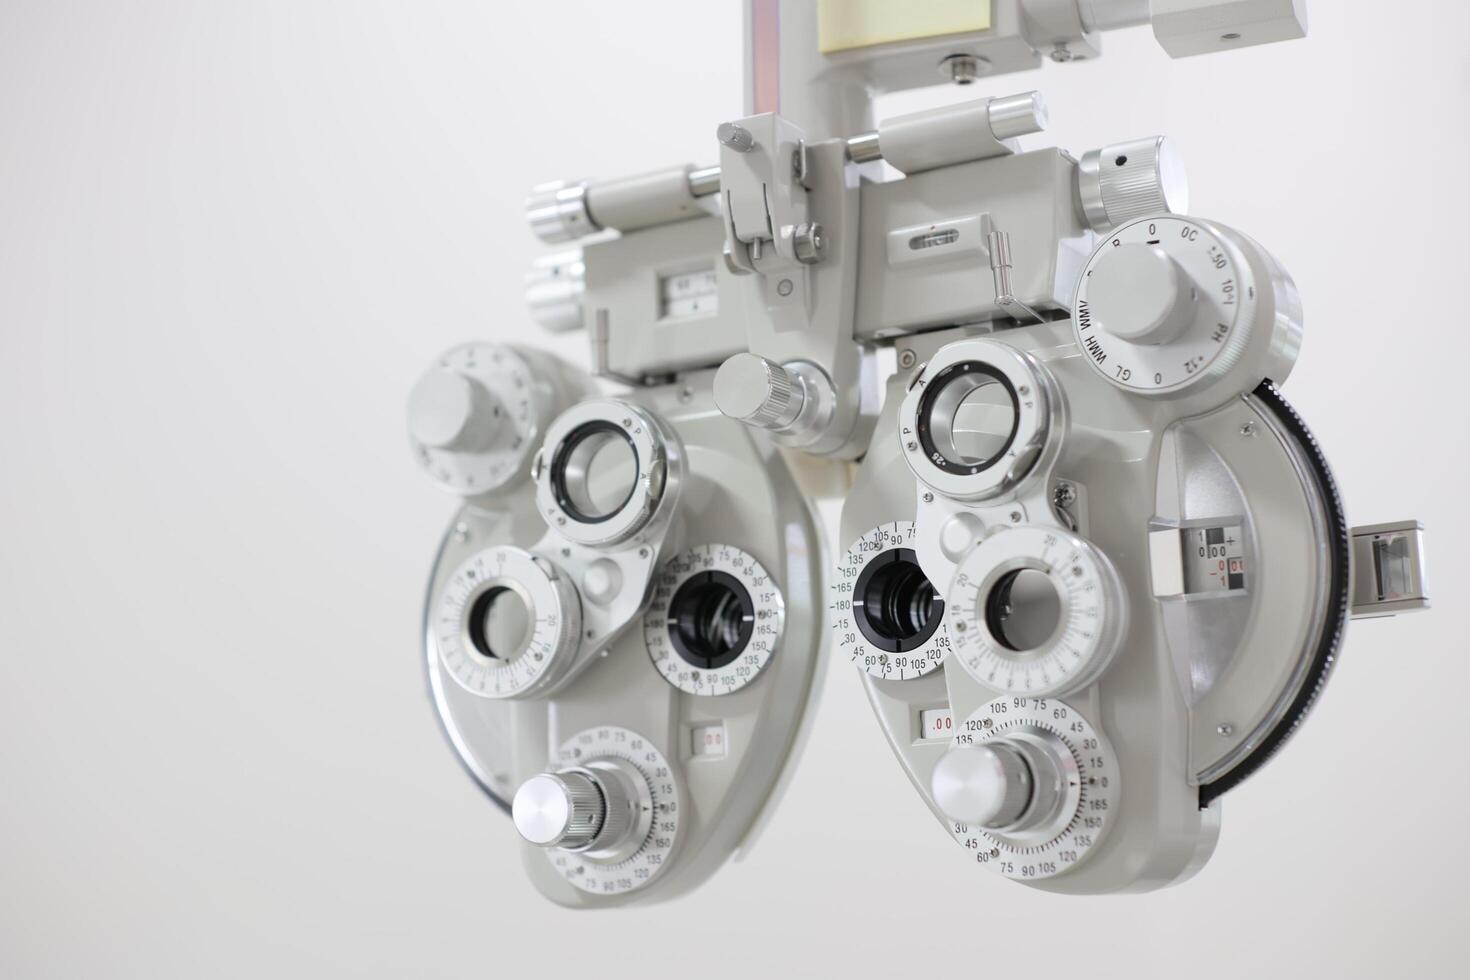 phoropter voor oog testen, lenzen bril voor oog controleren in optisch op te slaan foto